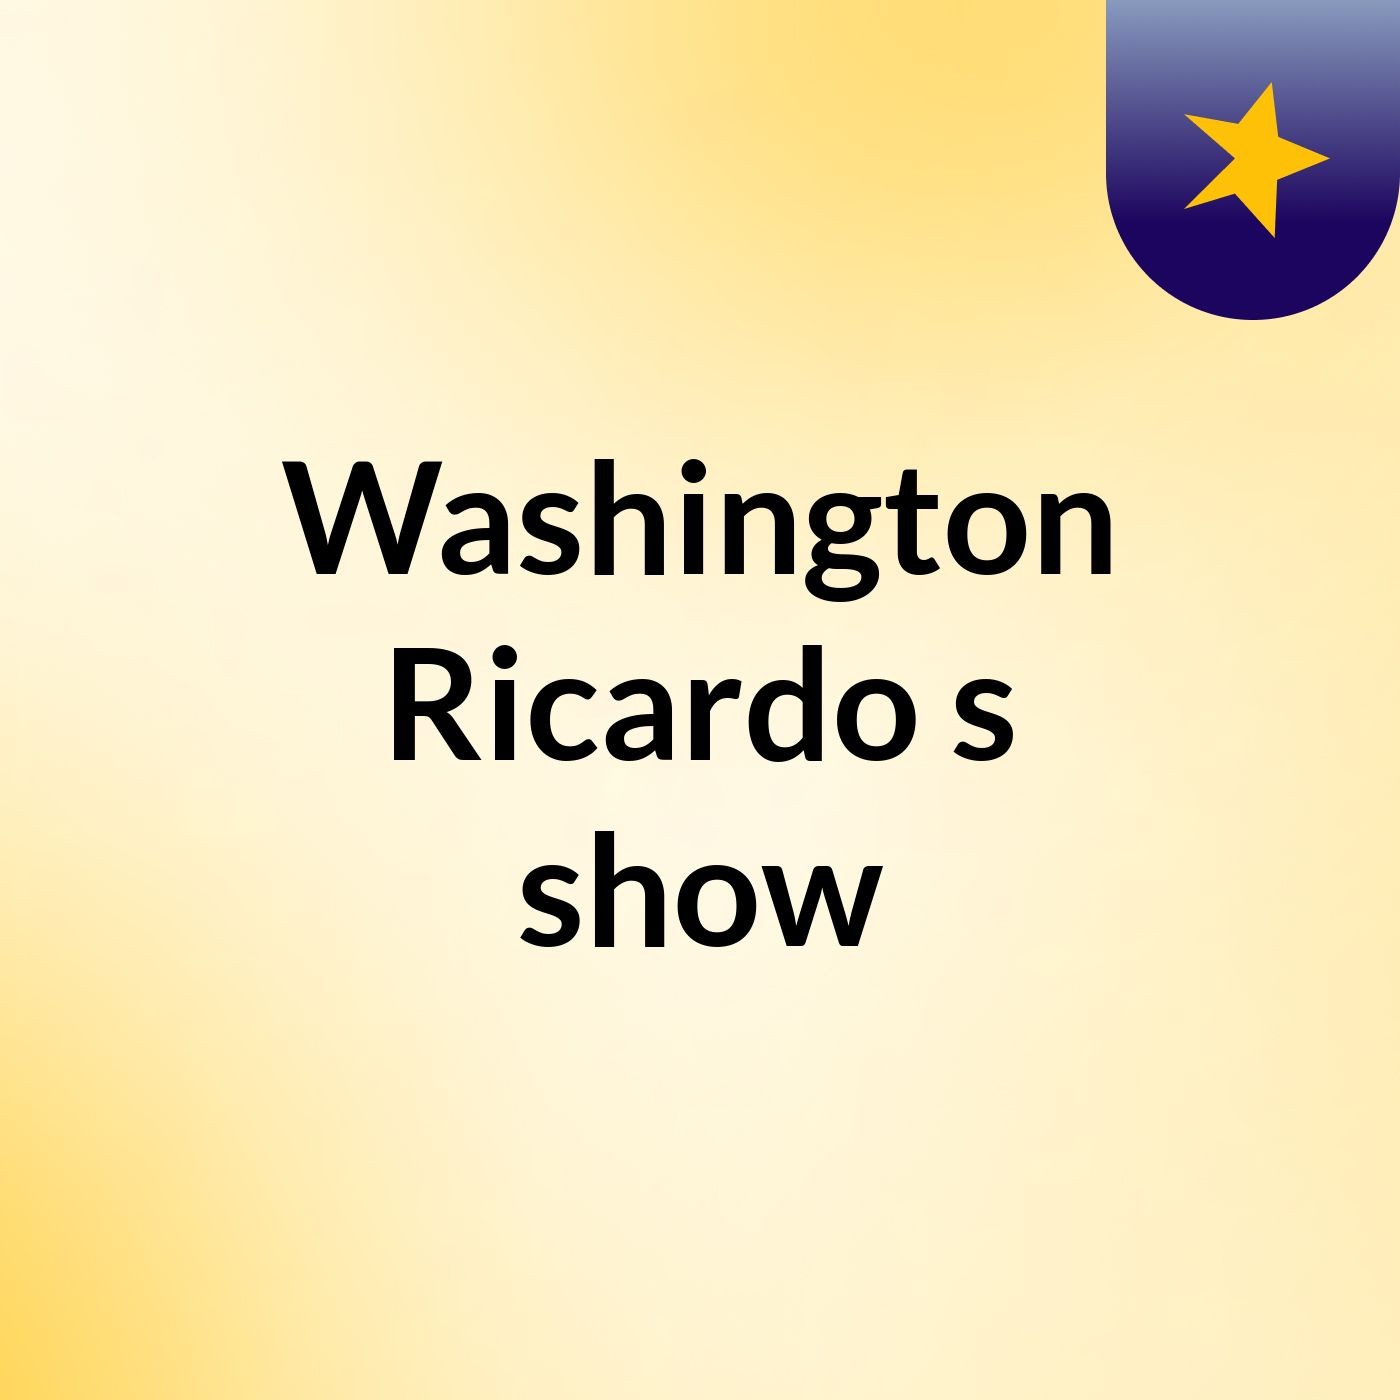 Washington Ricardo's show